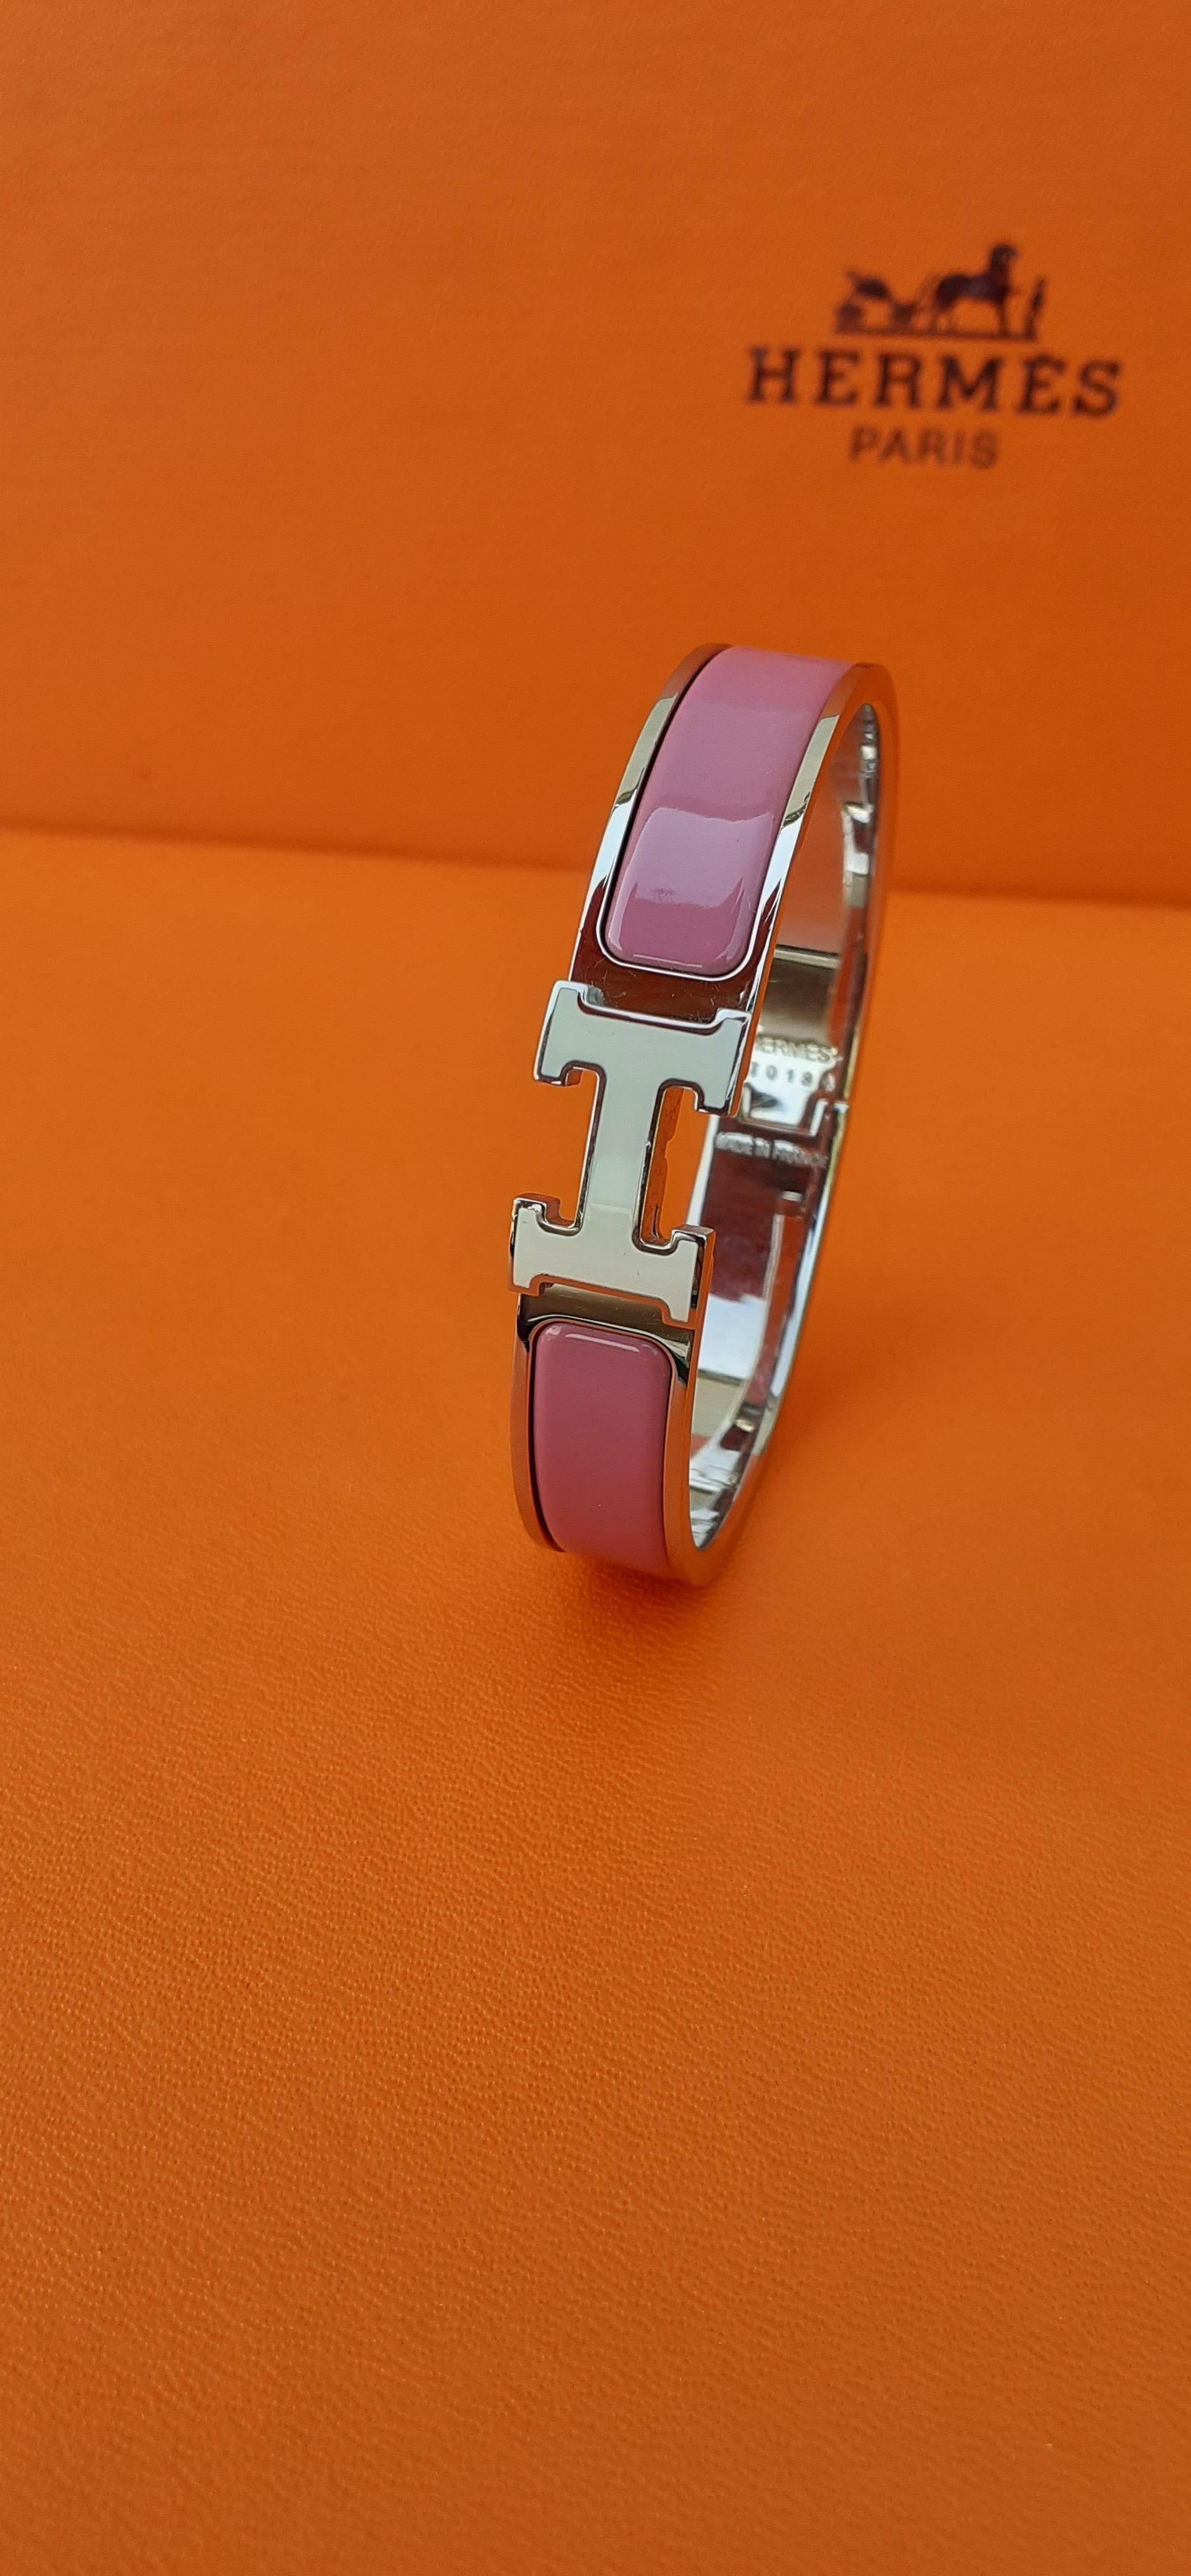 Magnifique bracelet Hermès authentique

